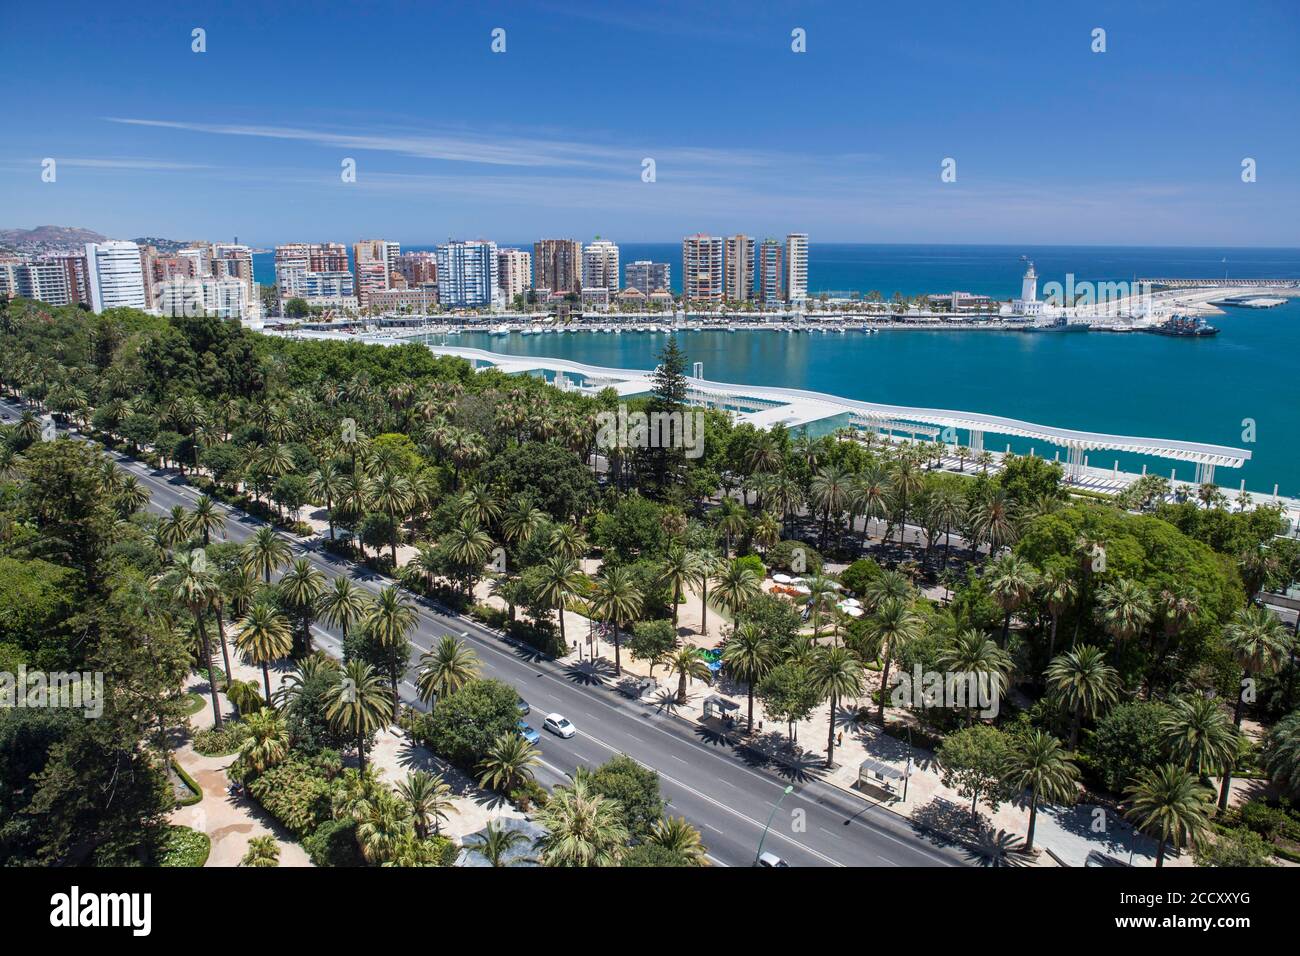 Vue sur la ville avec port et parcs, Malaga, Espagne Banque D'Images